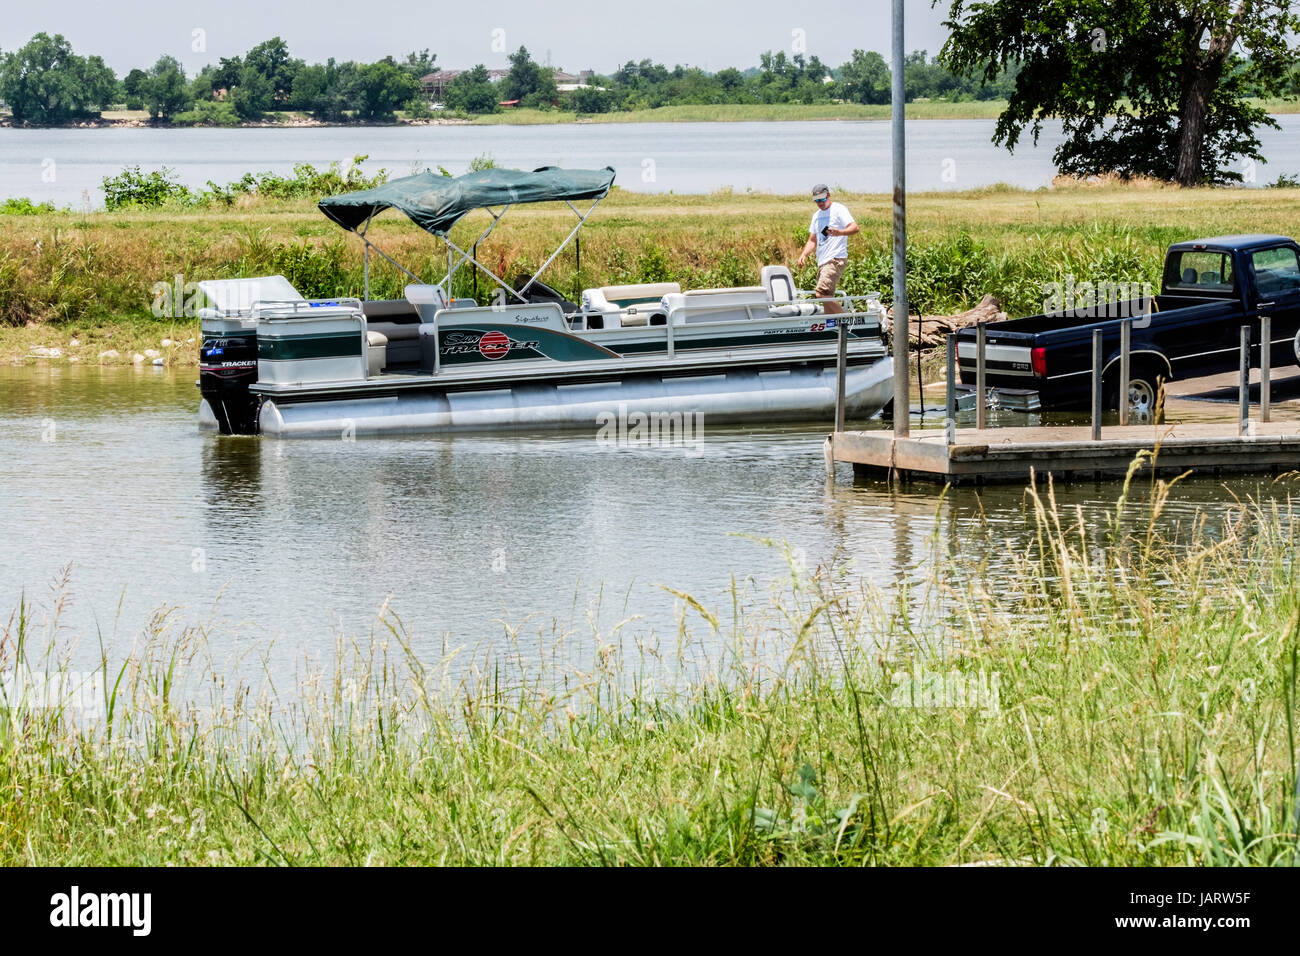 Un homme de race blanche des charges jusqu'un bateau ponton sur un bateau remorque après la pêche sur le lac Overholser à Oklahoma City, Oklahoma, USA. Banque D'Images